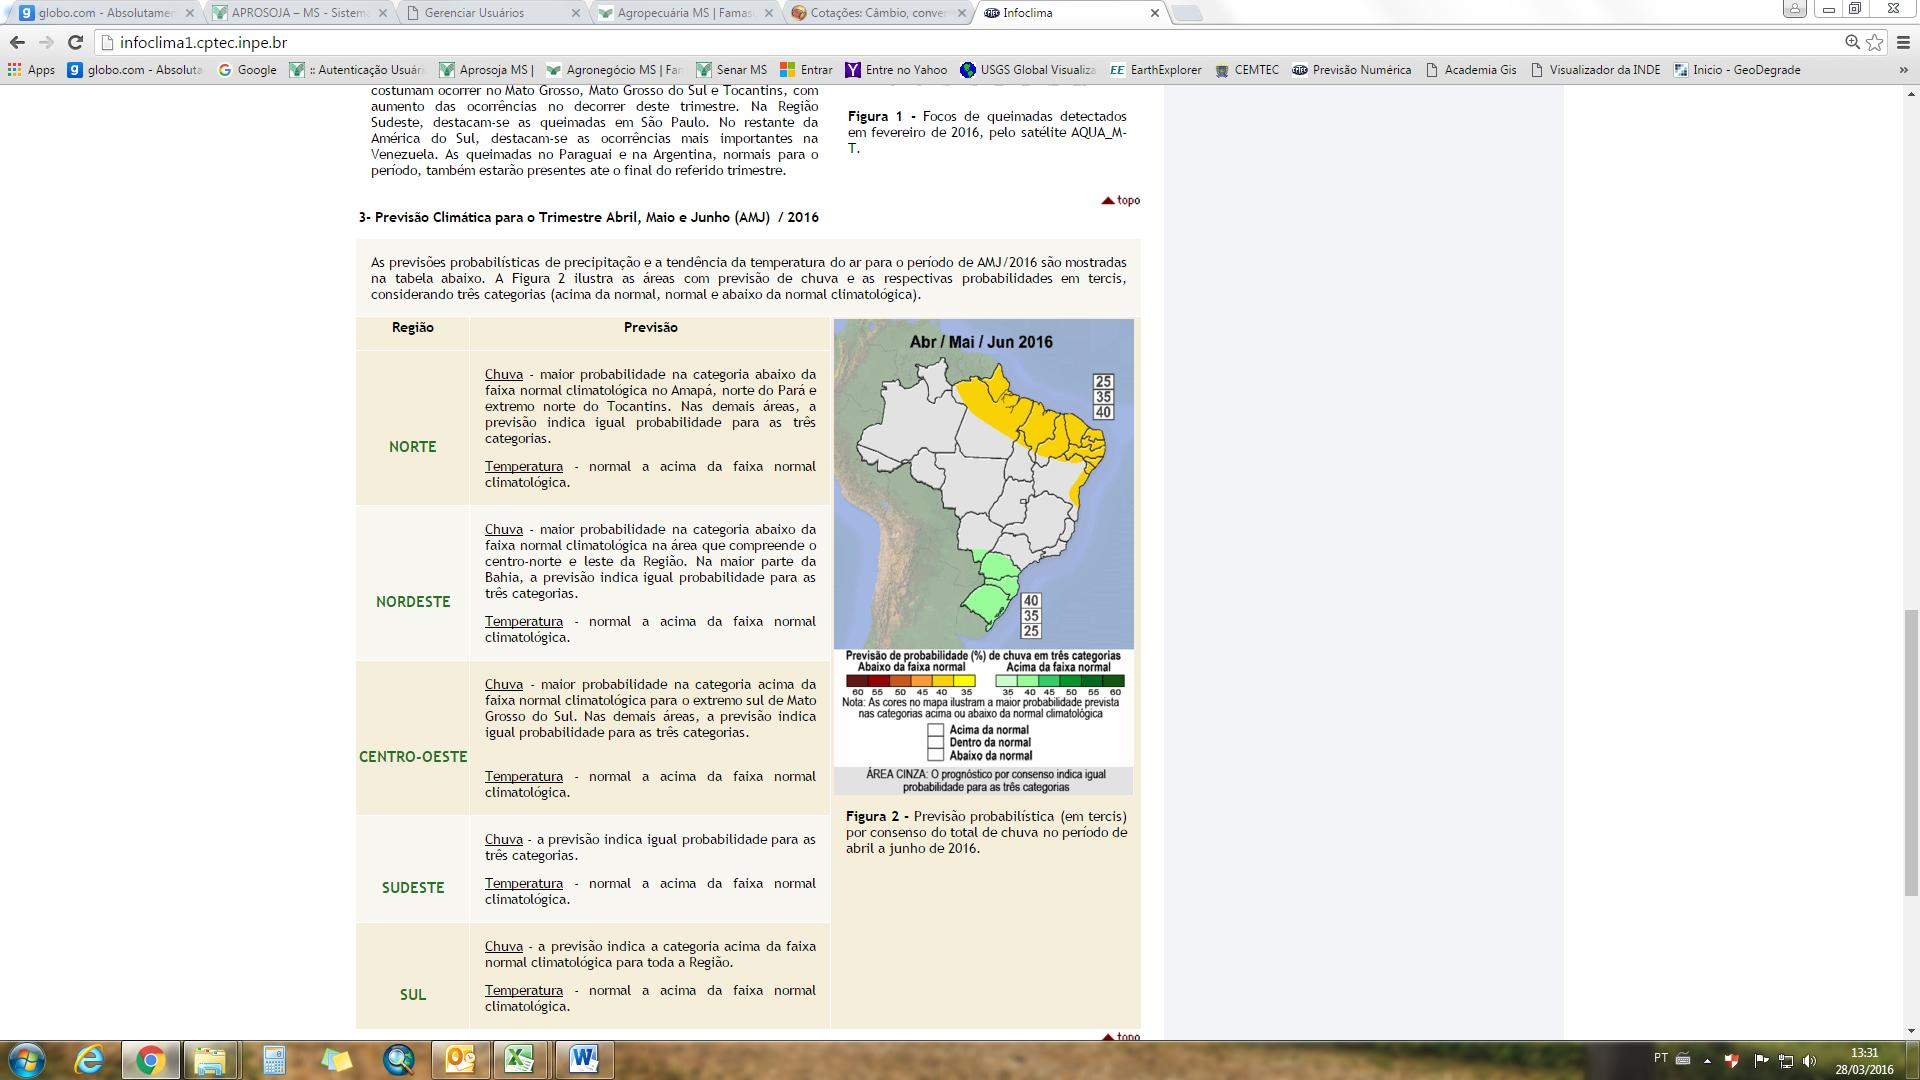 De acordo com o Prognóstico Climático para Abril, Maio e Junho (AMJ) de 2016 (figura 02), as chuvas para as regiões produtoras de Mato Grosso do Sul, devem permanecer entre as faixas de 100 a 500mm.